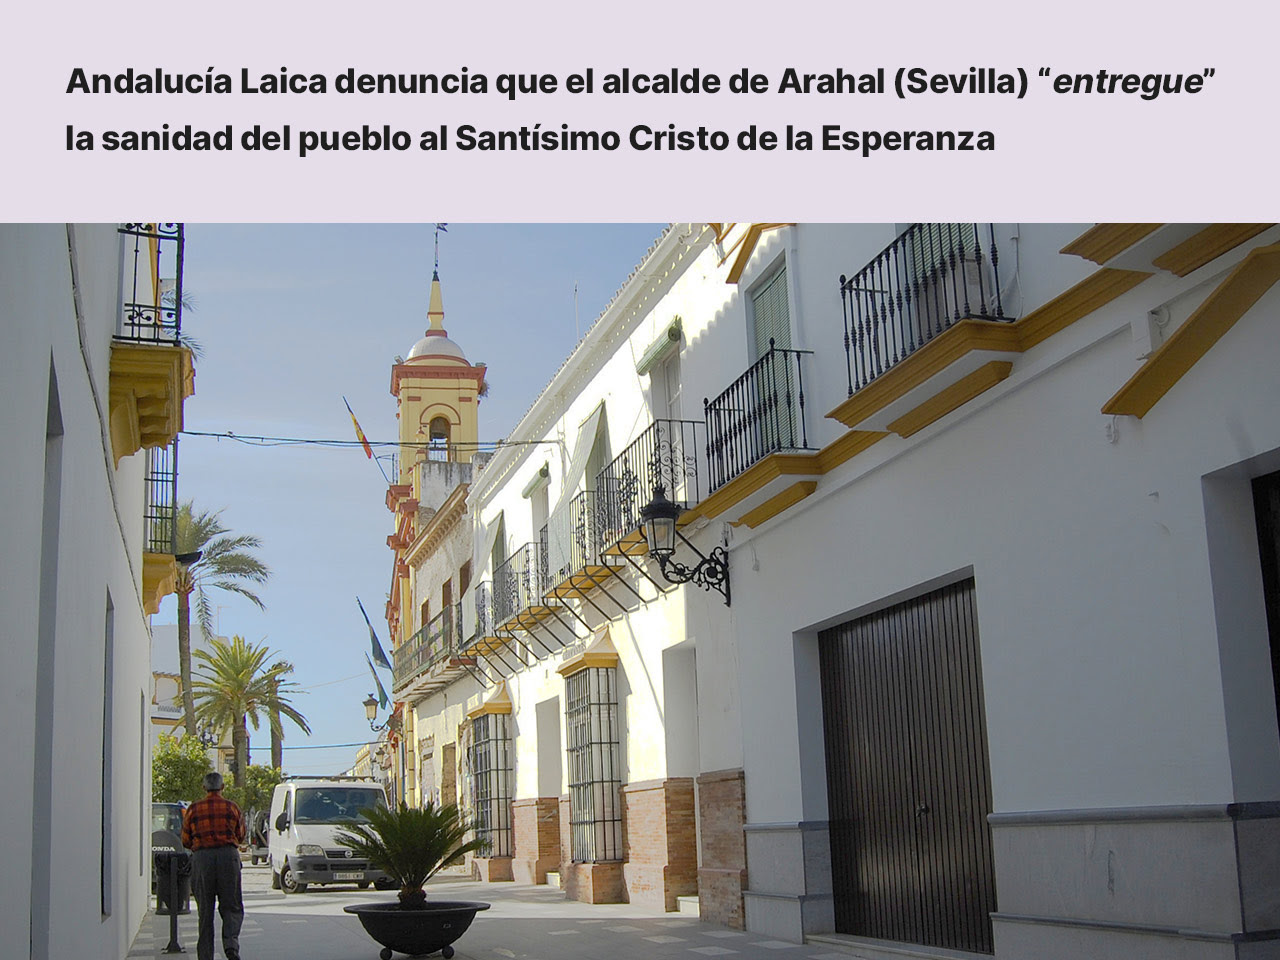 Andalucía Laica denuncia que el alcalde de Arahal (Sevilla) “entregue” la sanidad del pueblo al Santísimo Cristo de la Esperanza